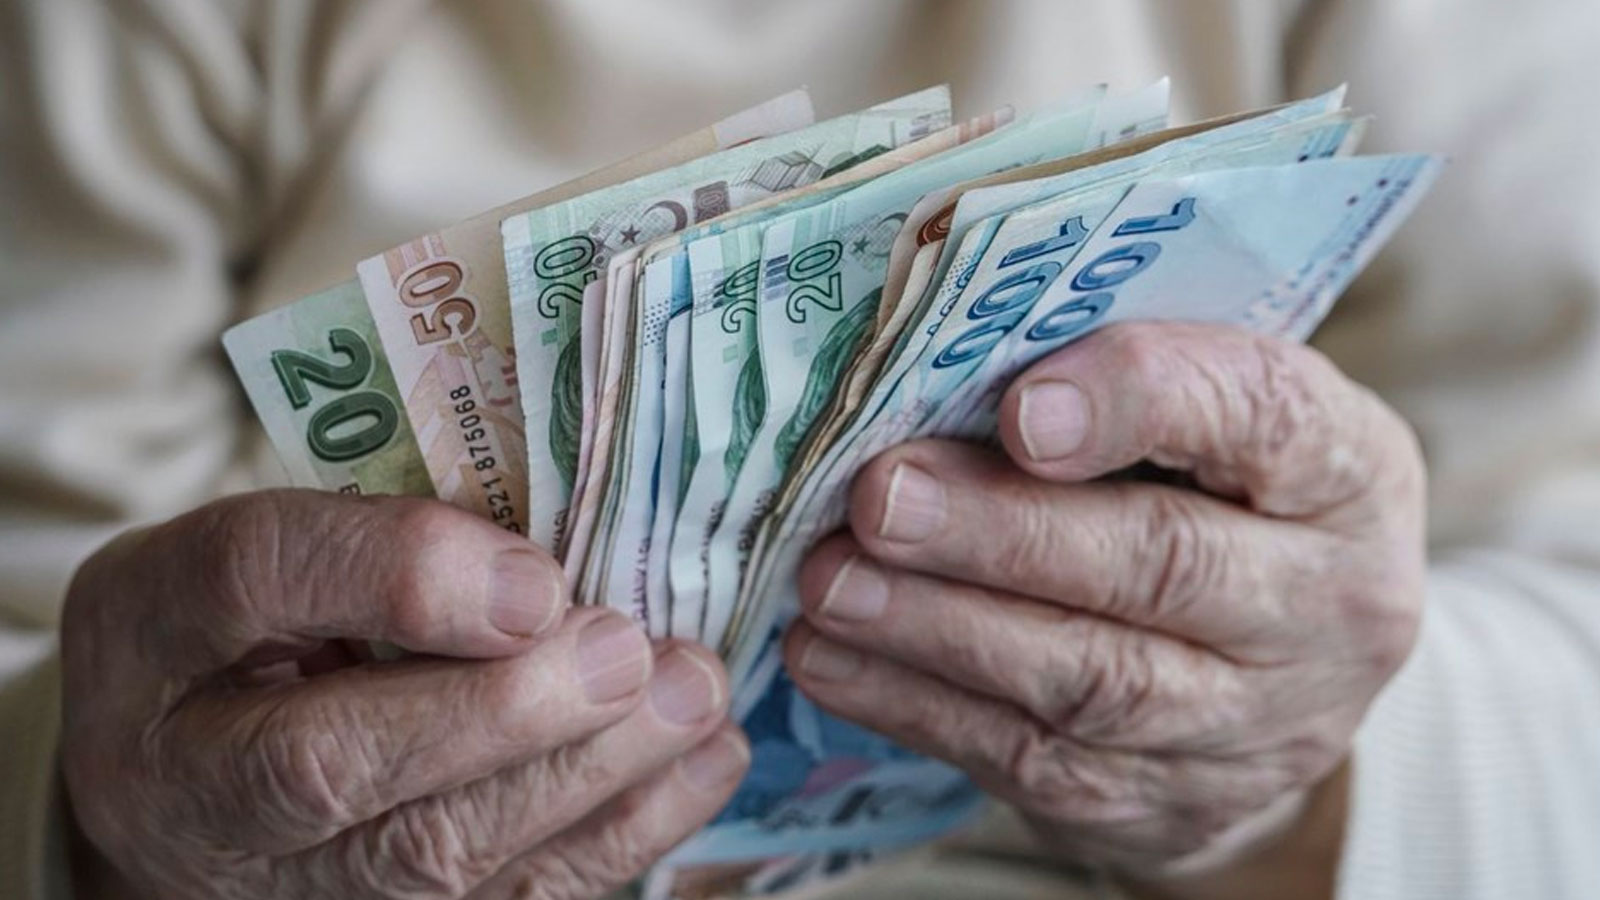 SGK (Emekli Sandığı, SSK, Bağ-Kur) emekli maaşı ödemelerini Ziraat Bankası aracılığı ile alan vatandaşlar 12.000 TL'ye varan emekli promosyon ödemesi imkanından faydalanabilecek. Banka promosyon ödemelerini 3 yıllık peşin yapıyor. Müşterilerinin 2022 yılına ilişkin devam eden emekli promosyon tutarlarını iade etmeden başvurularının alınabileceğini belirten banka, 2024 emekli promosyon ödemesi yapılırken önceki döneme ilişkin iade tutarlarının da sistemsel olarak mahsup edildiğini de belirtiyor.